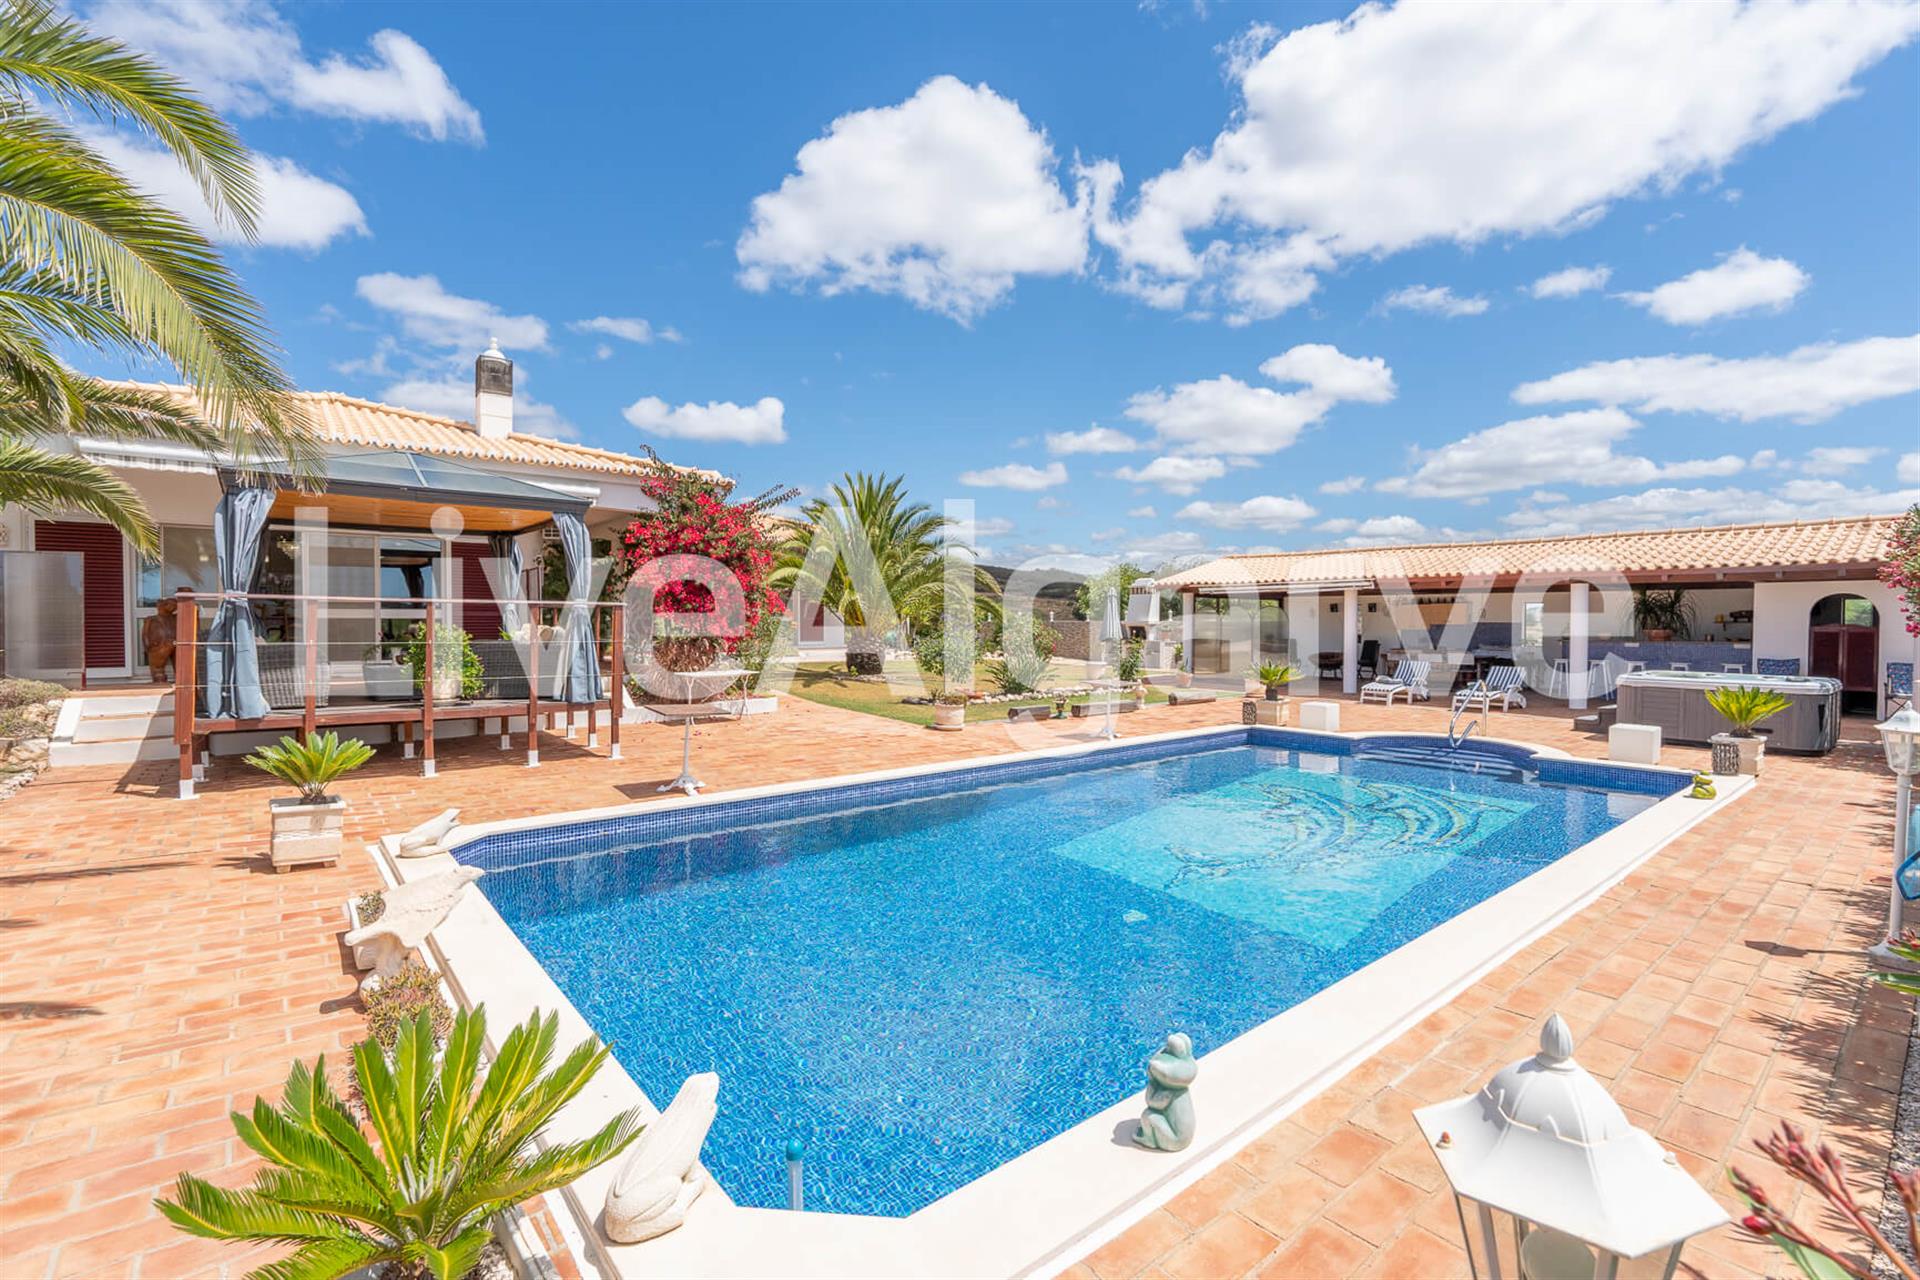 Outstanding | Luxuriöse T4 Country Villa Zum Verkauf In Bensafrim - Lagos